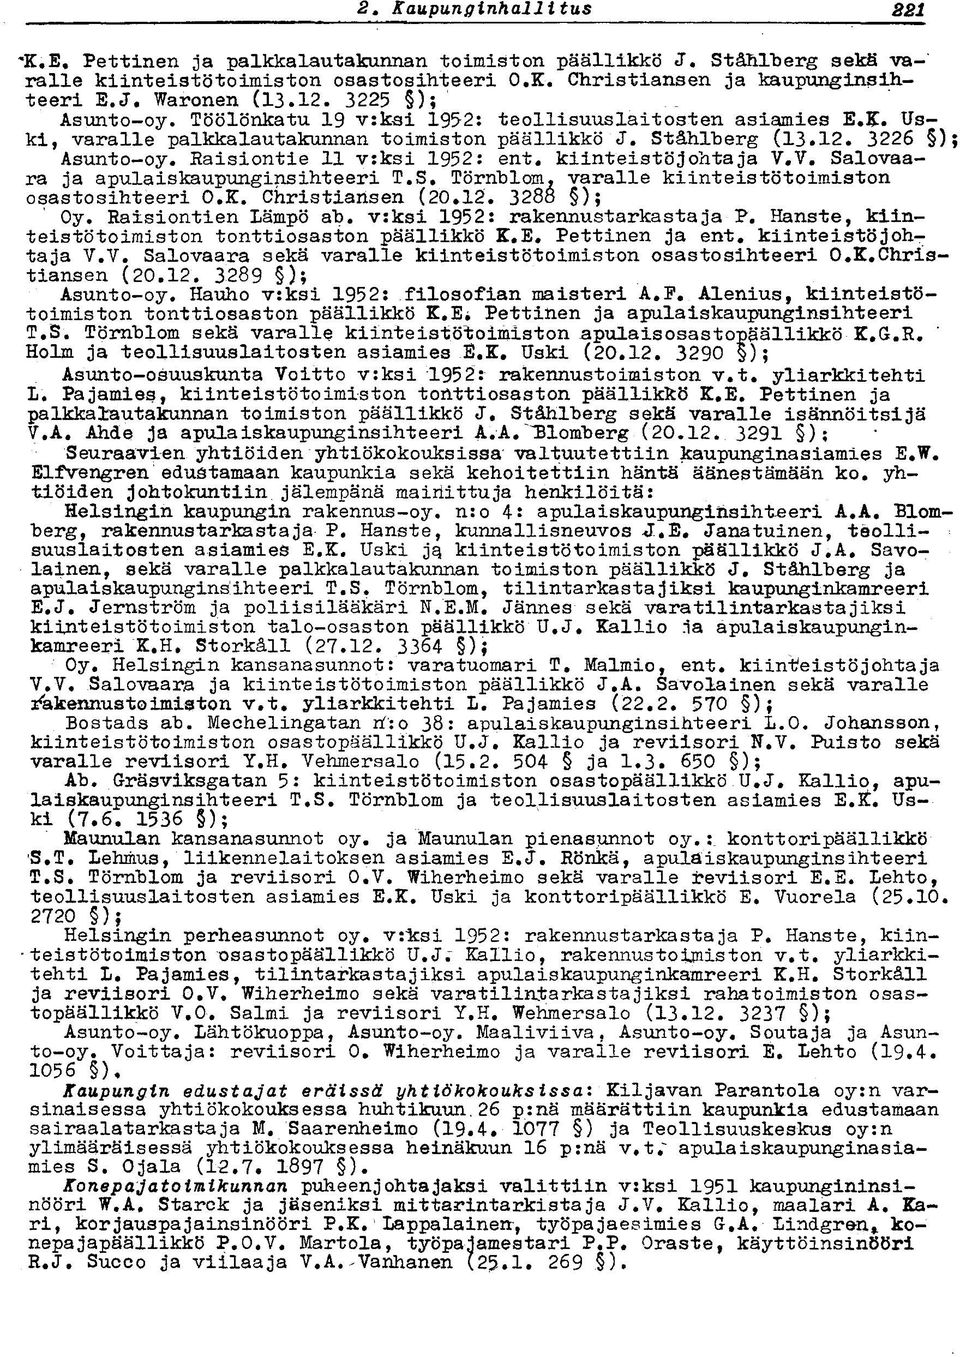 Raisiontie 11 v:ksi 1952: ent. kiinteistöjohtaja V.V. Salovaara ja apulaiskaupunginsihteeri T.S. Törnblom, varalle kiinteistö toimiston osastosihteeri O.K. Christiansen (20.12. 3288 ); Oy.